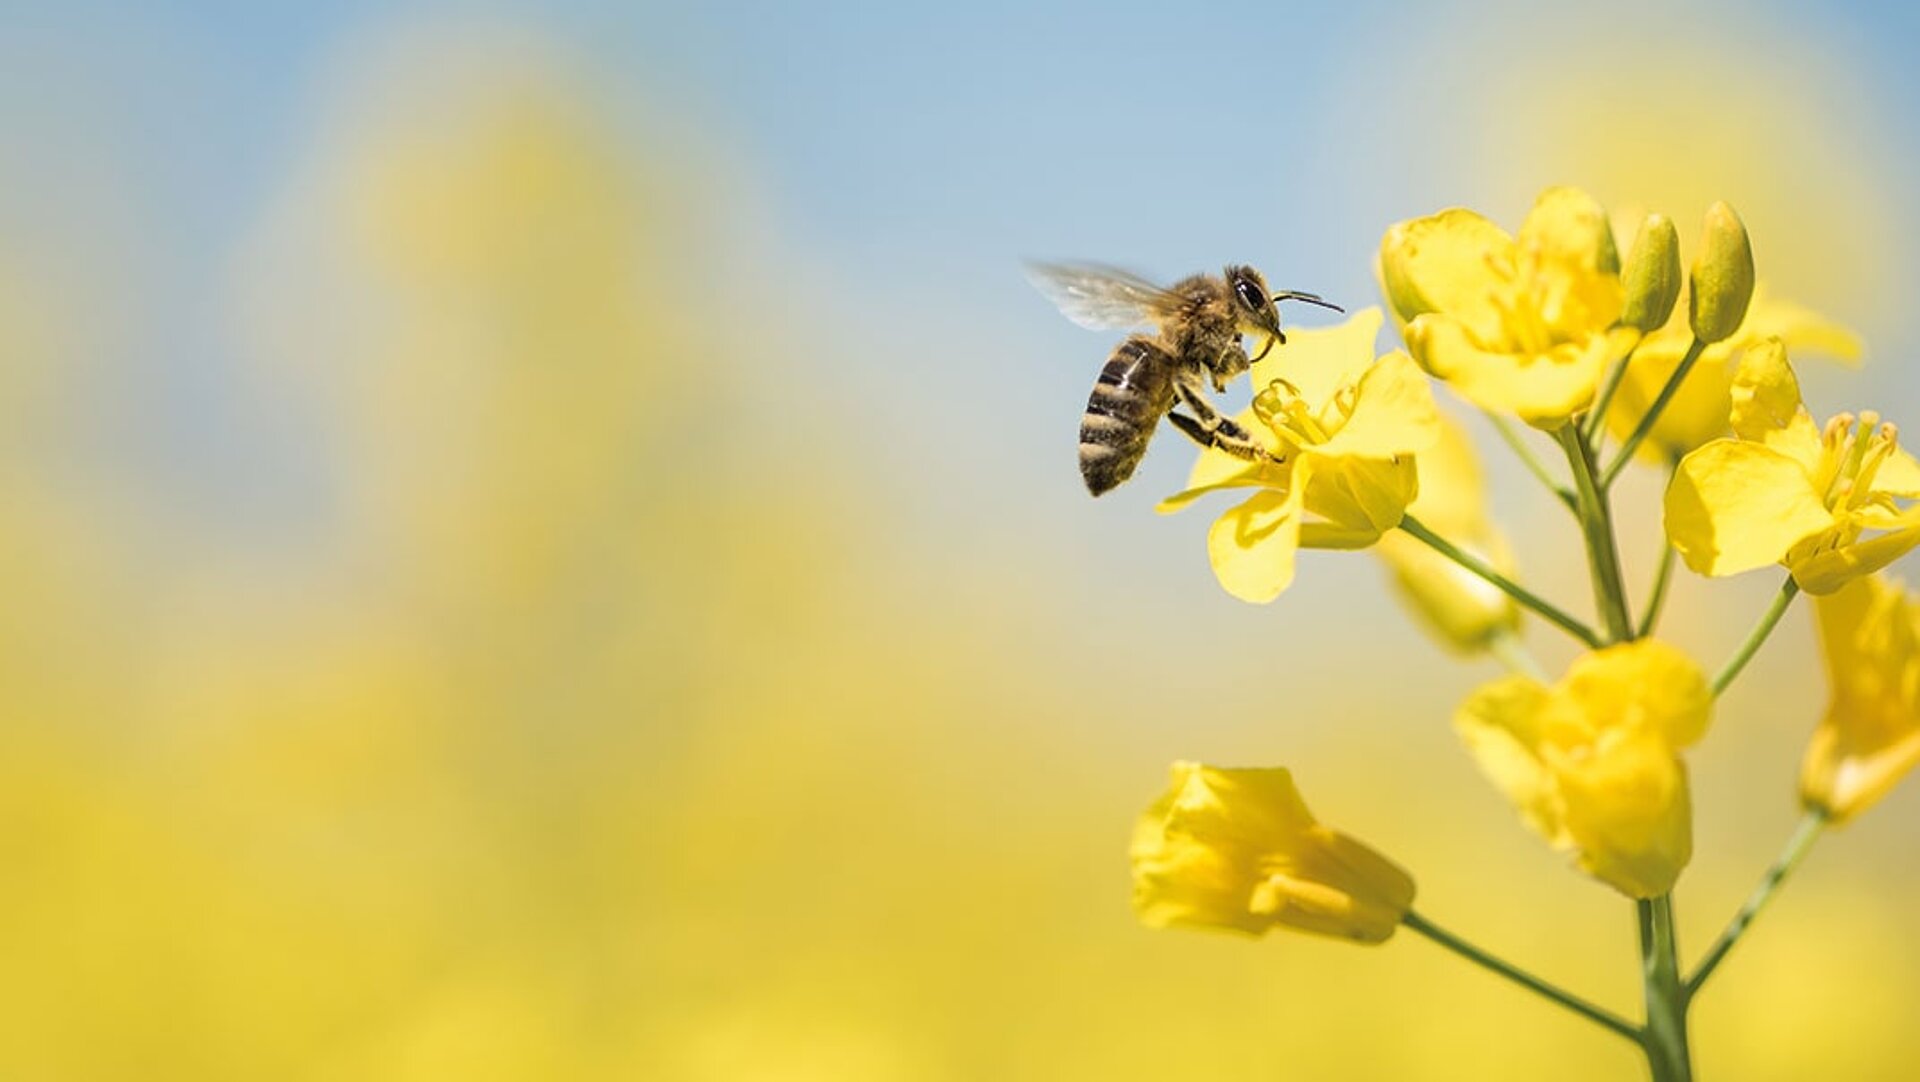 Auf einer gelb blühenden Senfpflanze sitzt eine Biene und saugt am Nektar.